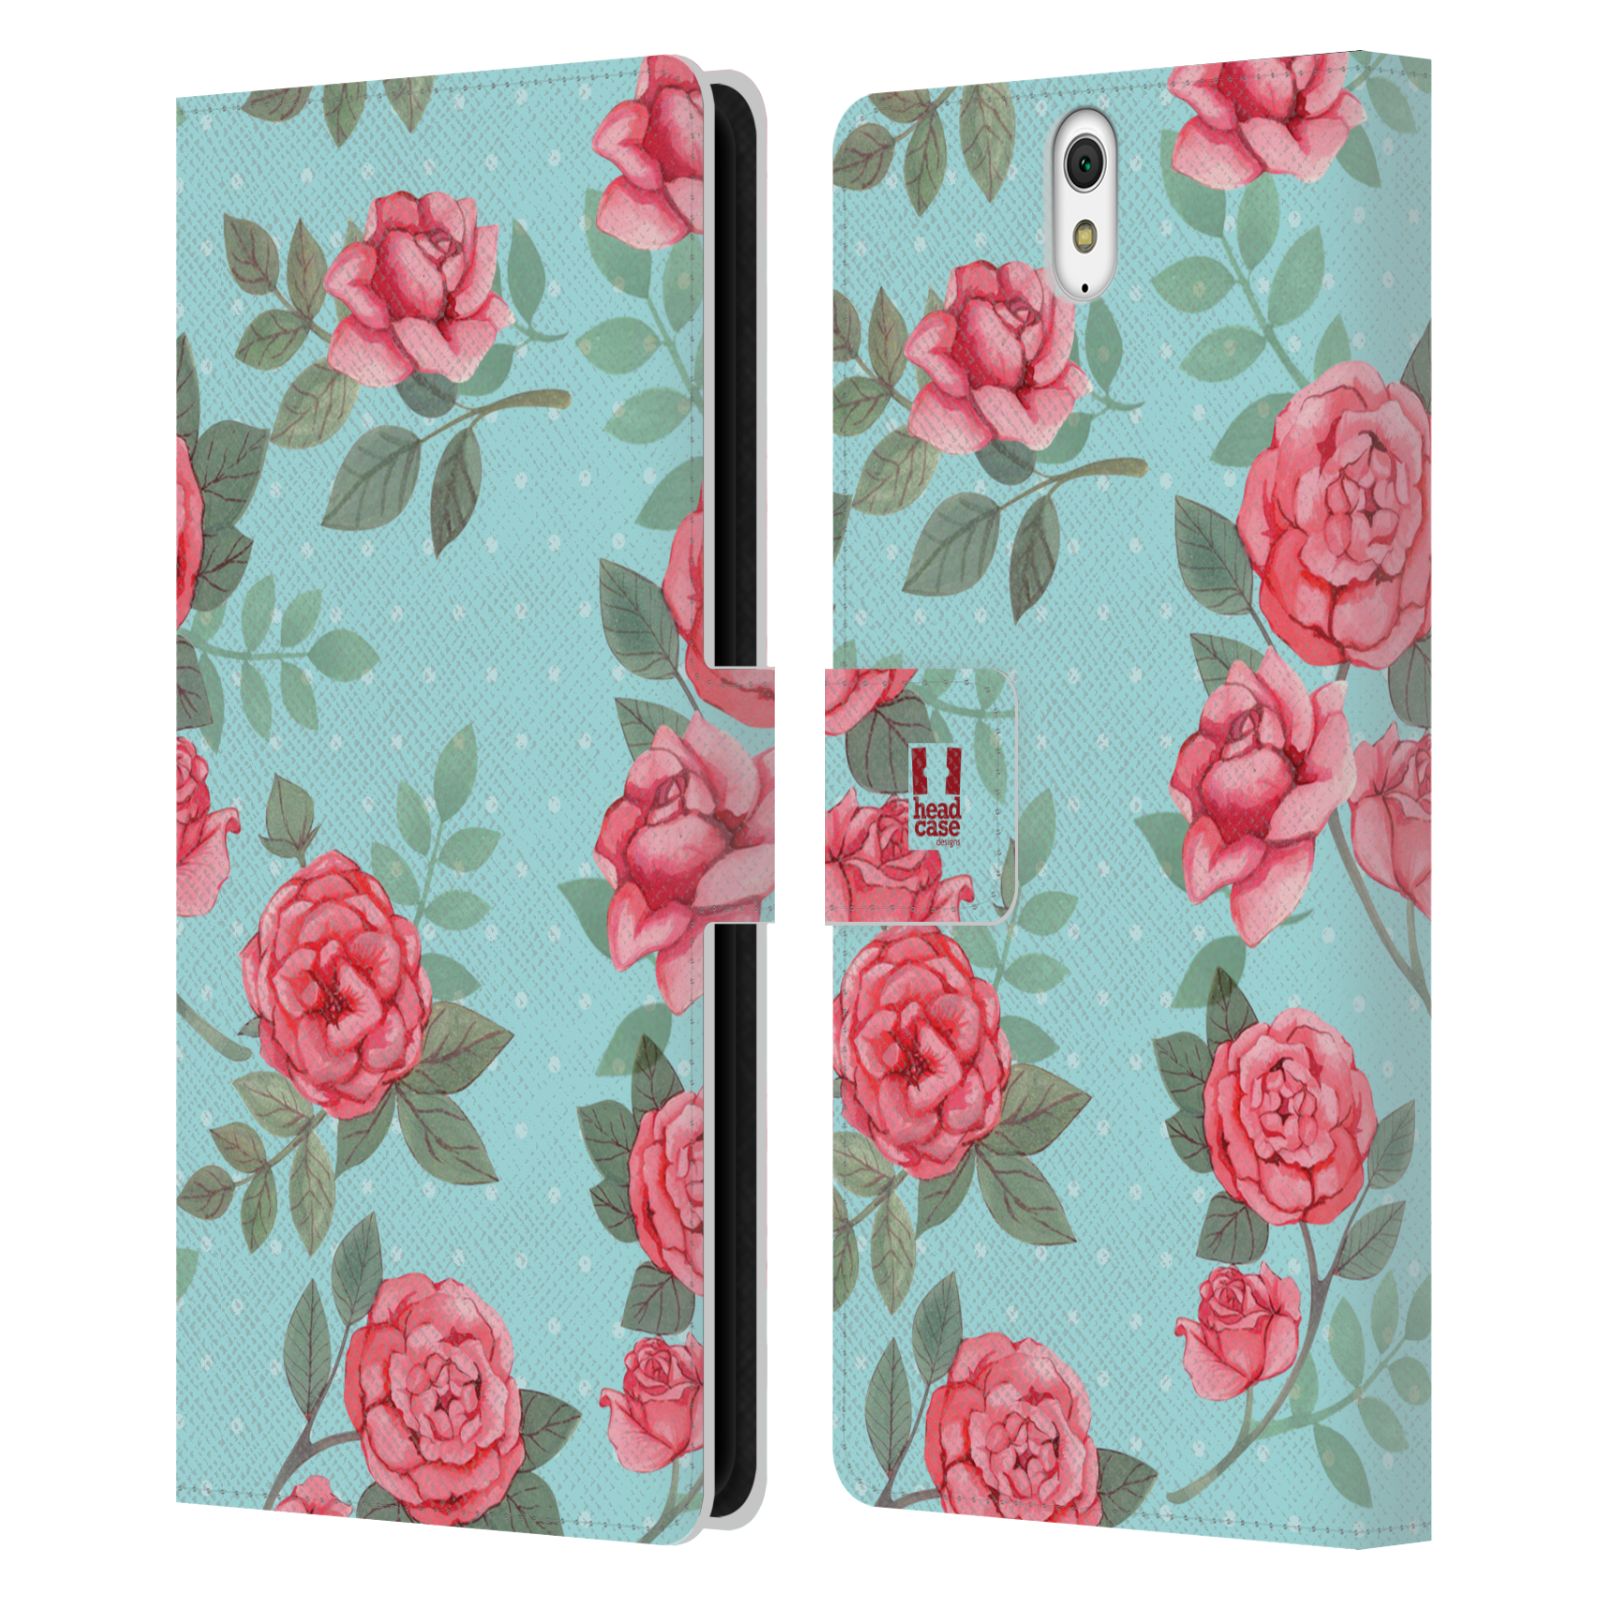 HEAD CASE Flipové pouzdro pro mobil SONY XPERIA C5 Ultra romantické květy velké růže modrá a růžová